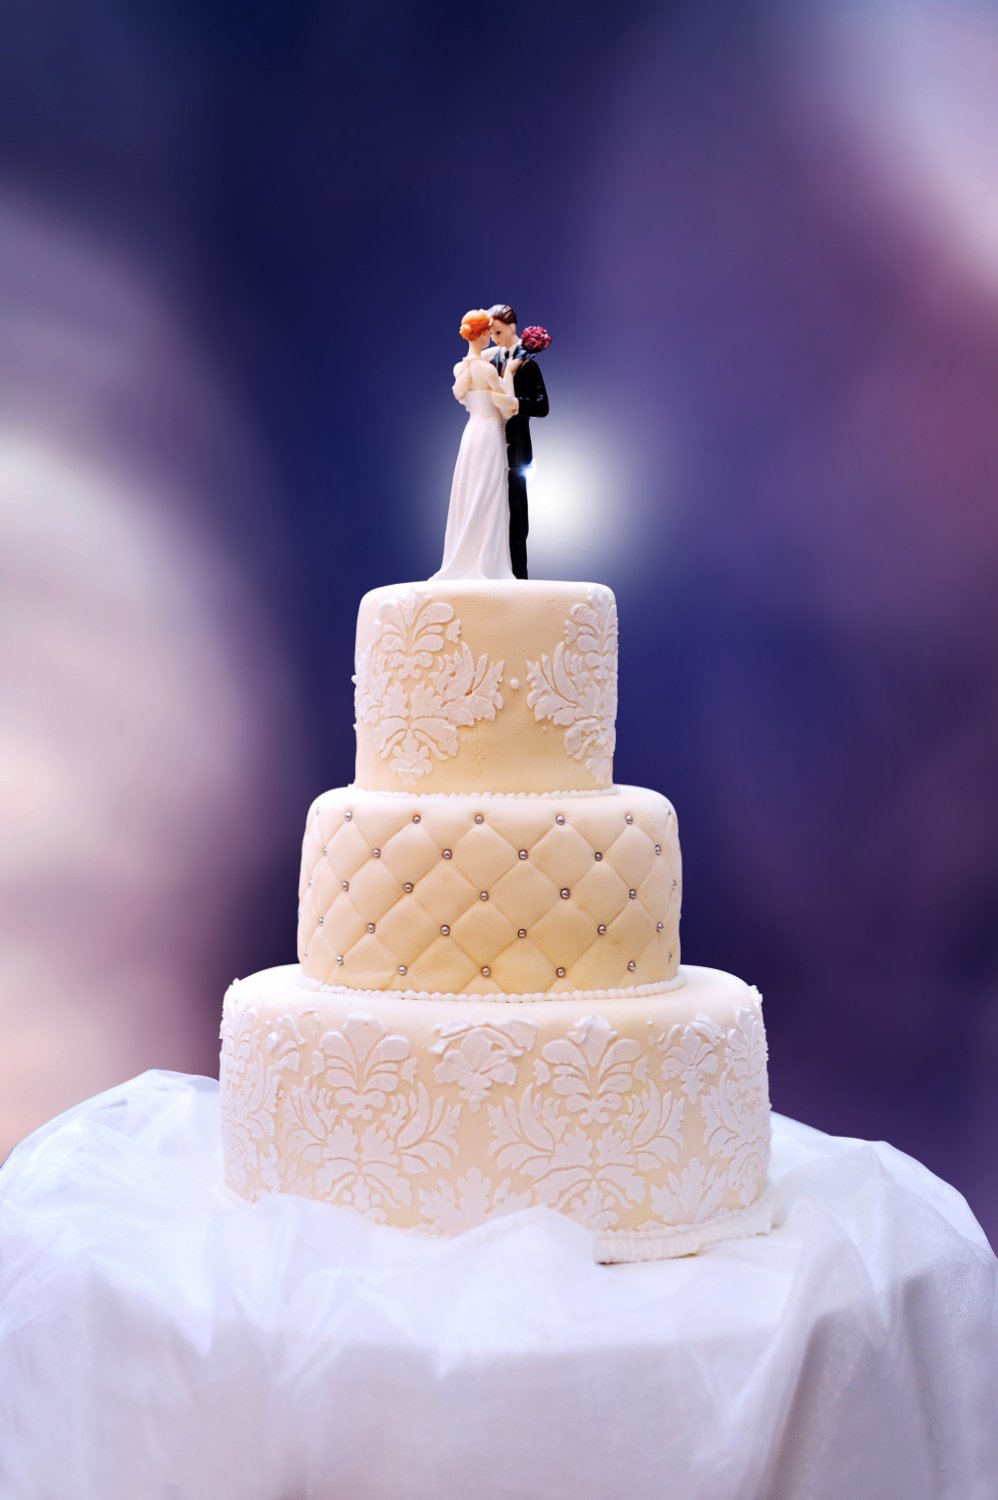 white wedding cake on table